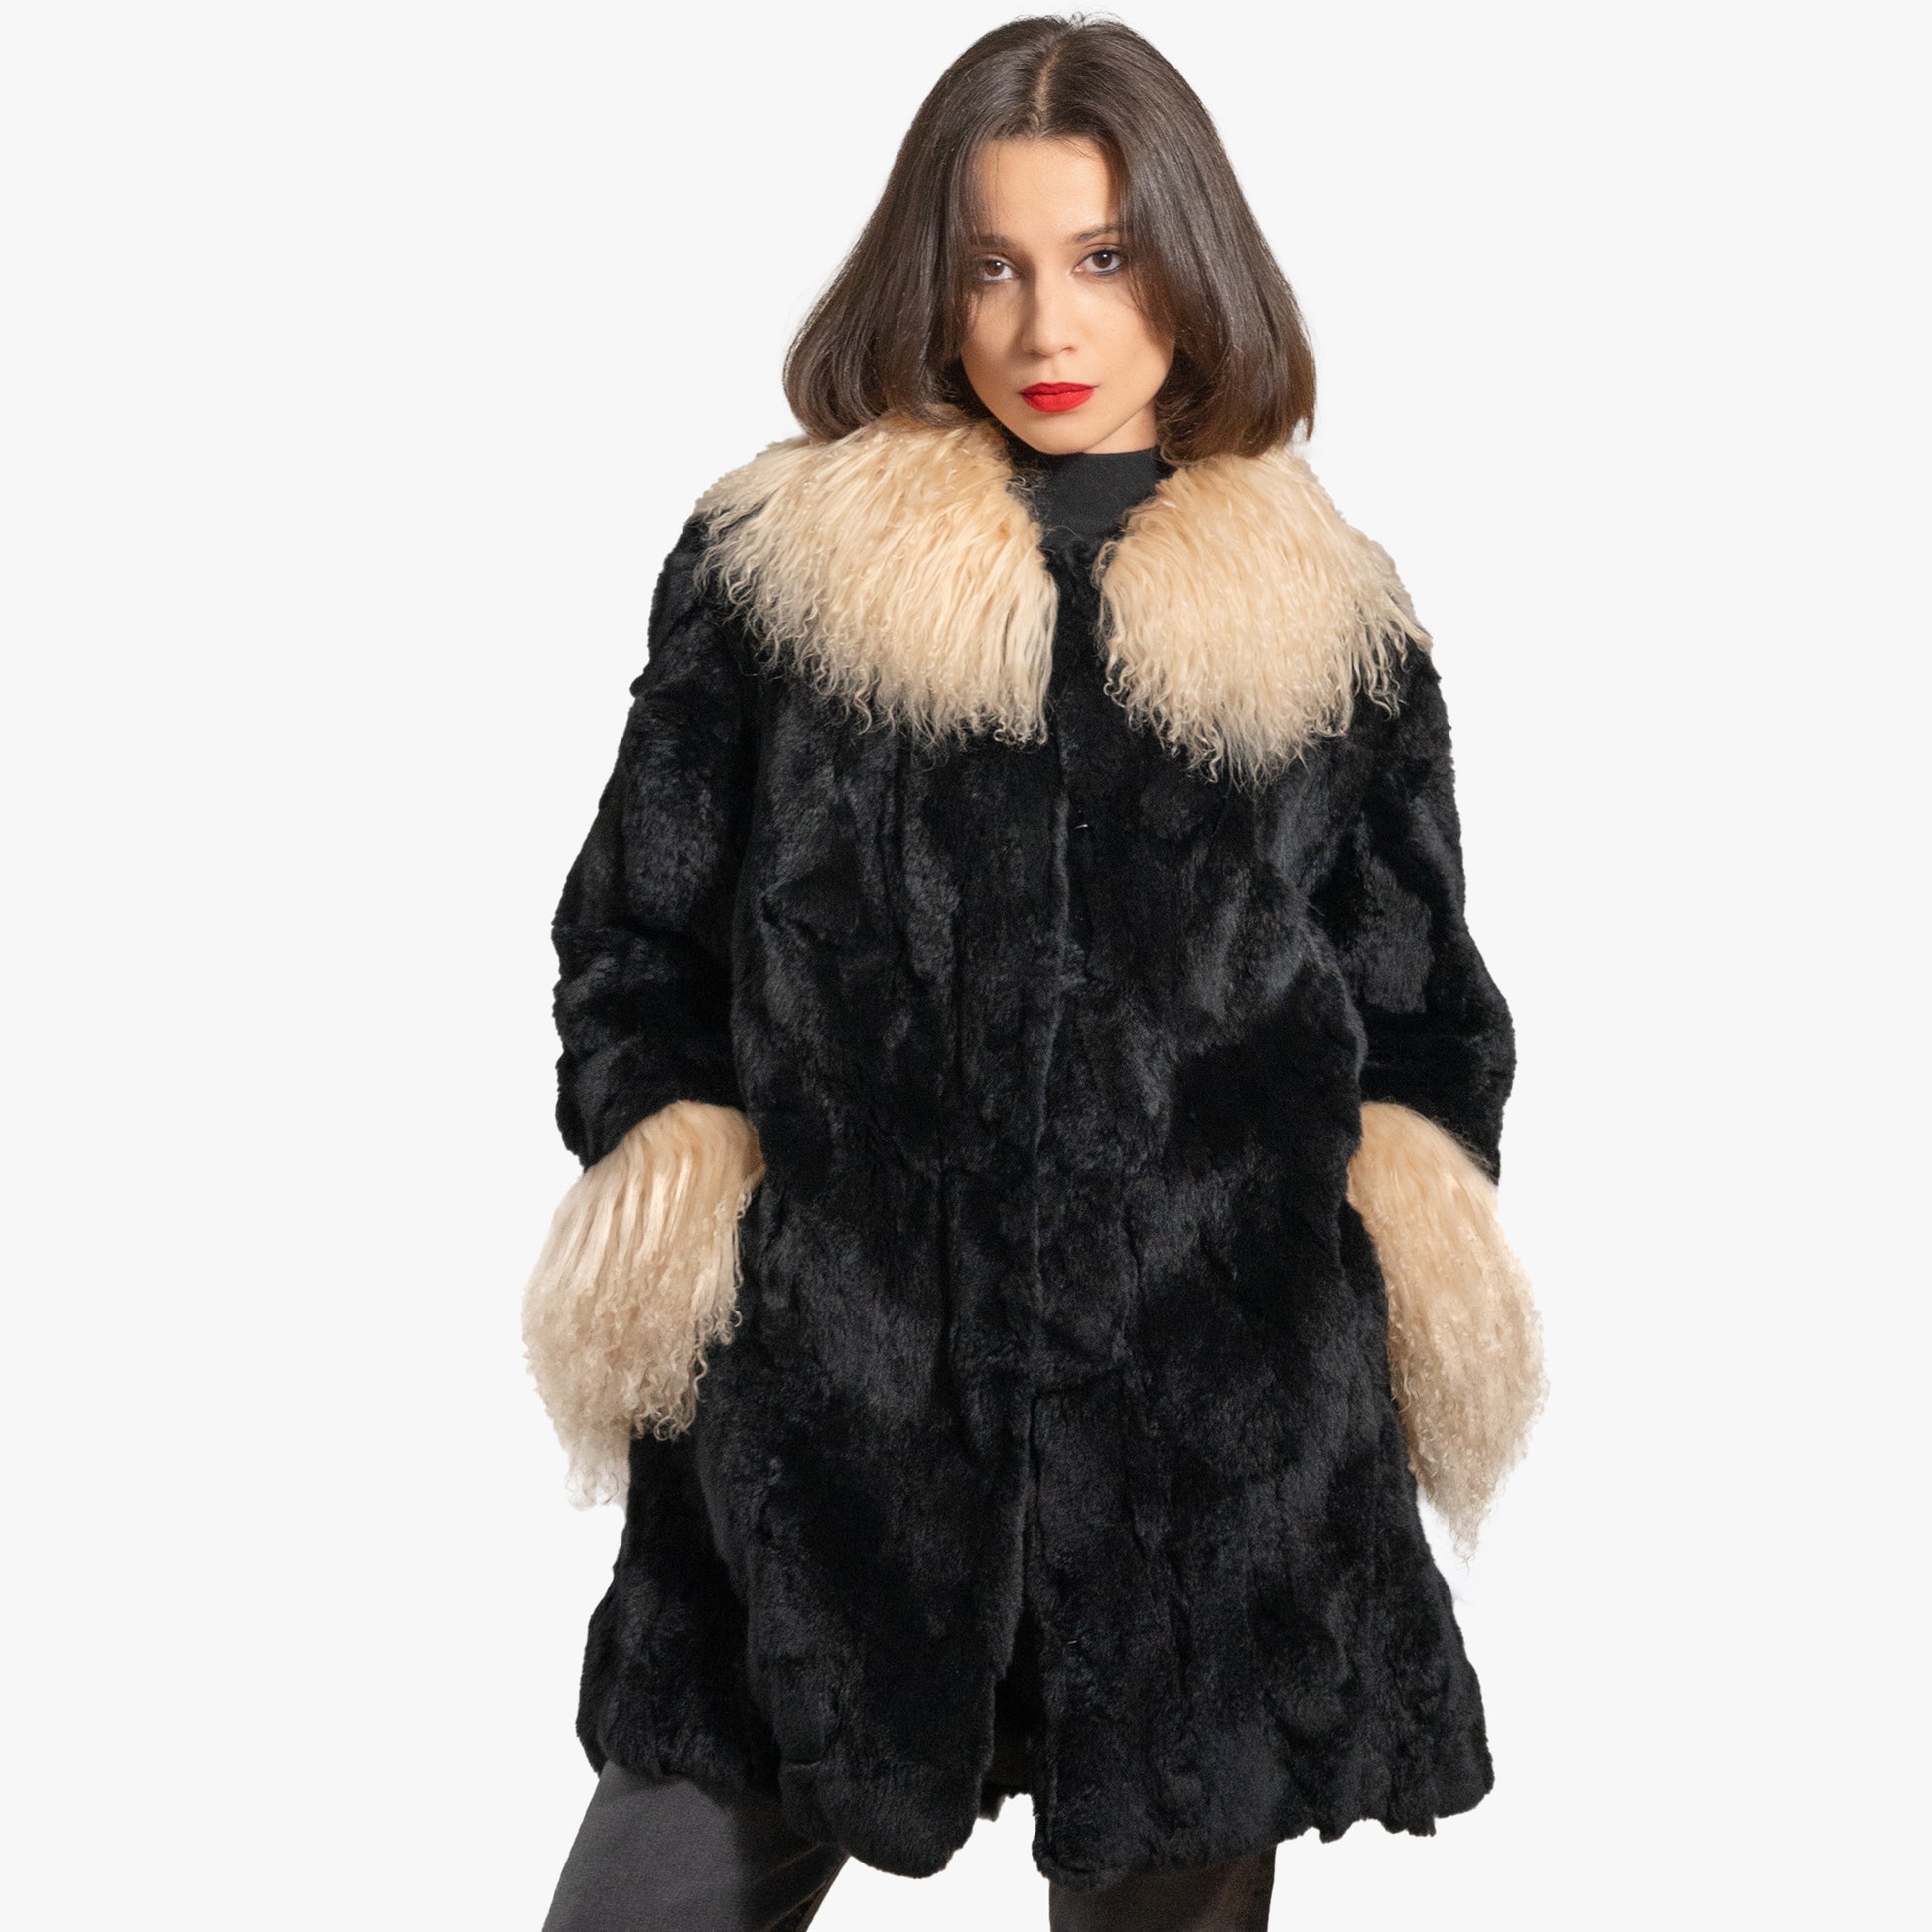  Women's Genuine Rabbit Fur Coat with Raccoon Fur Trim